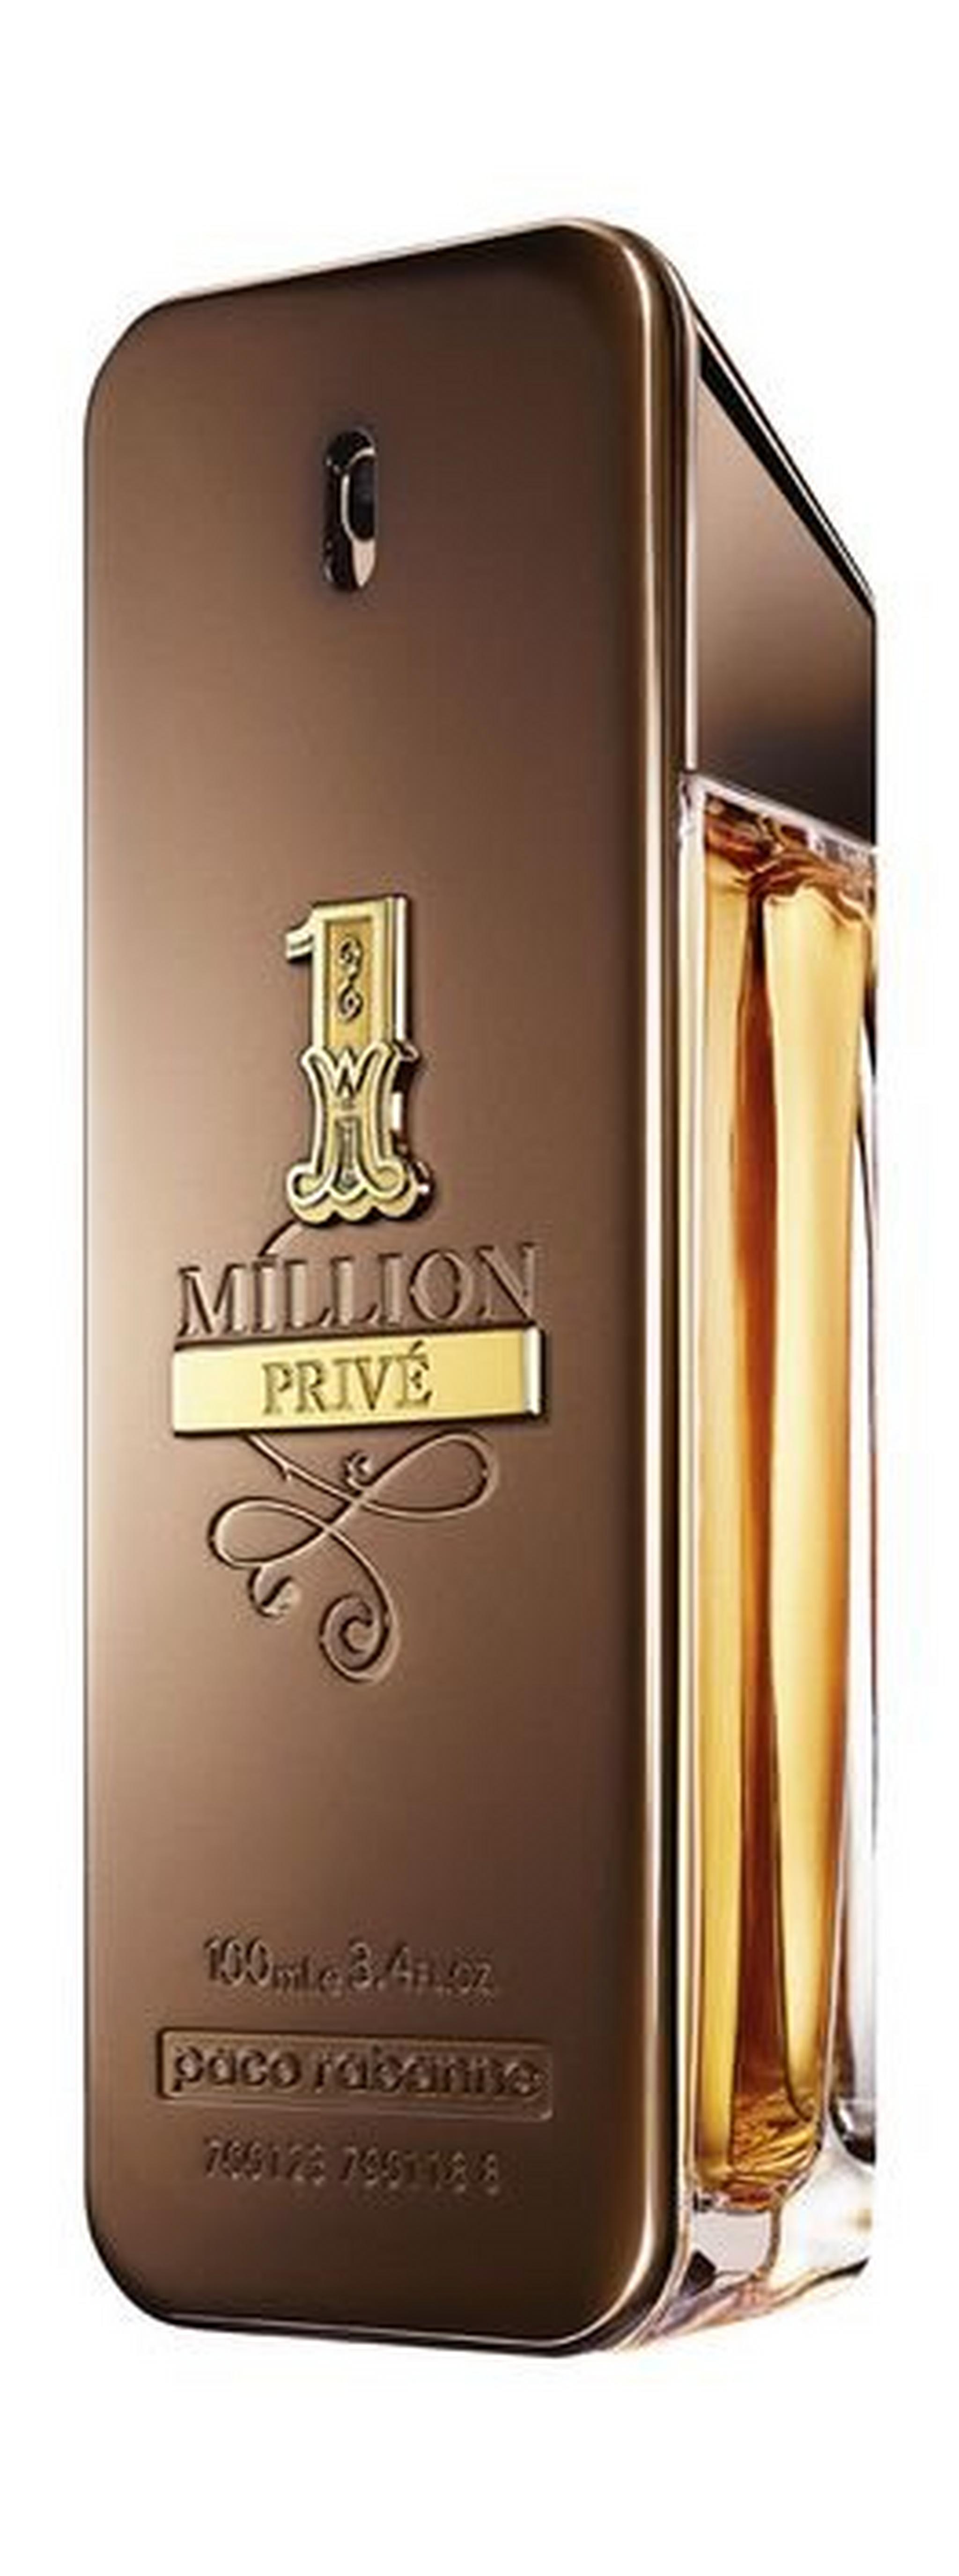 Paco Rabanne 1 Million Prive Eau de Parfum Men's Perfume - 100ml